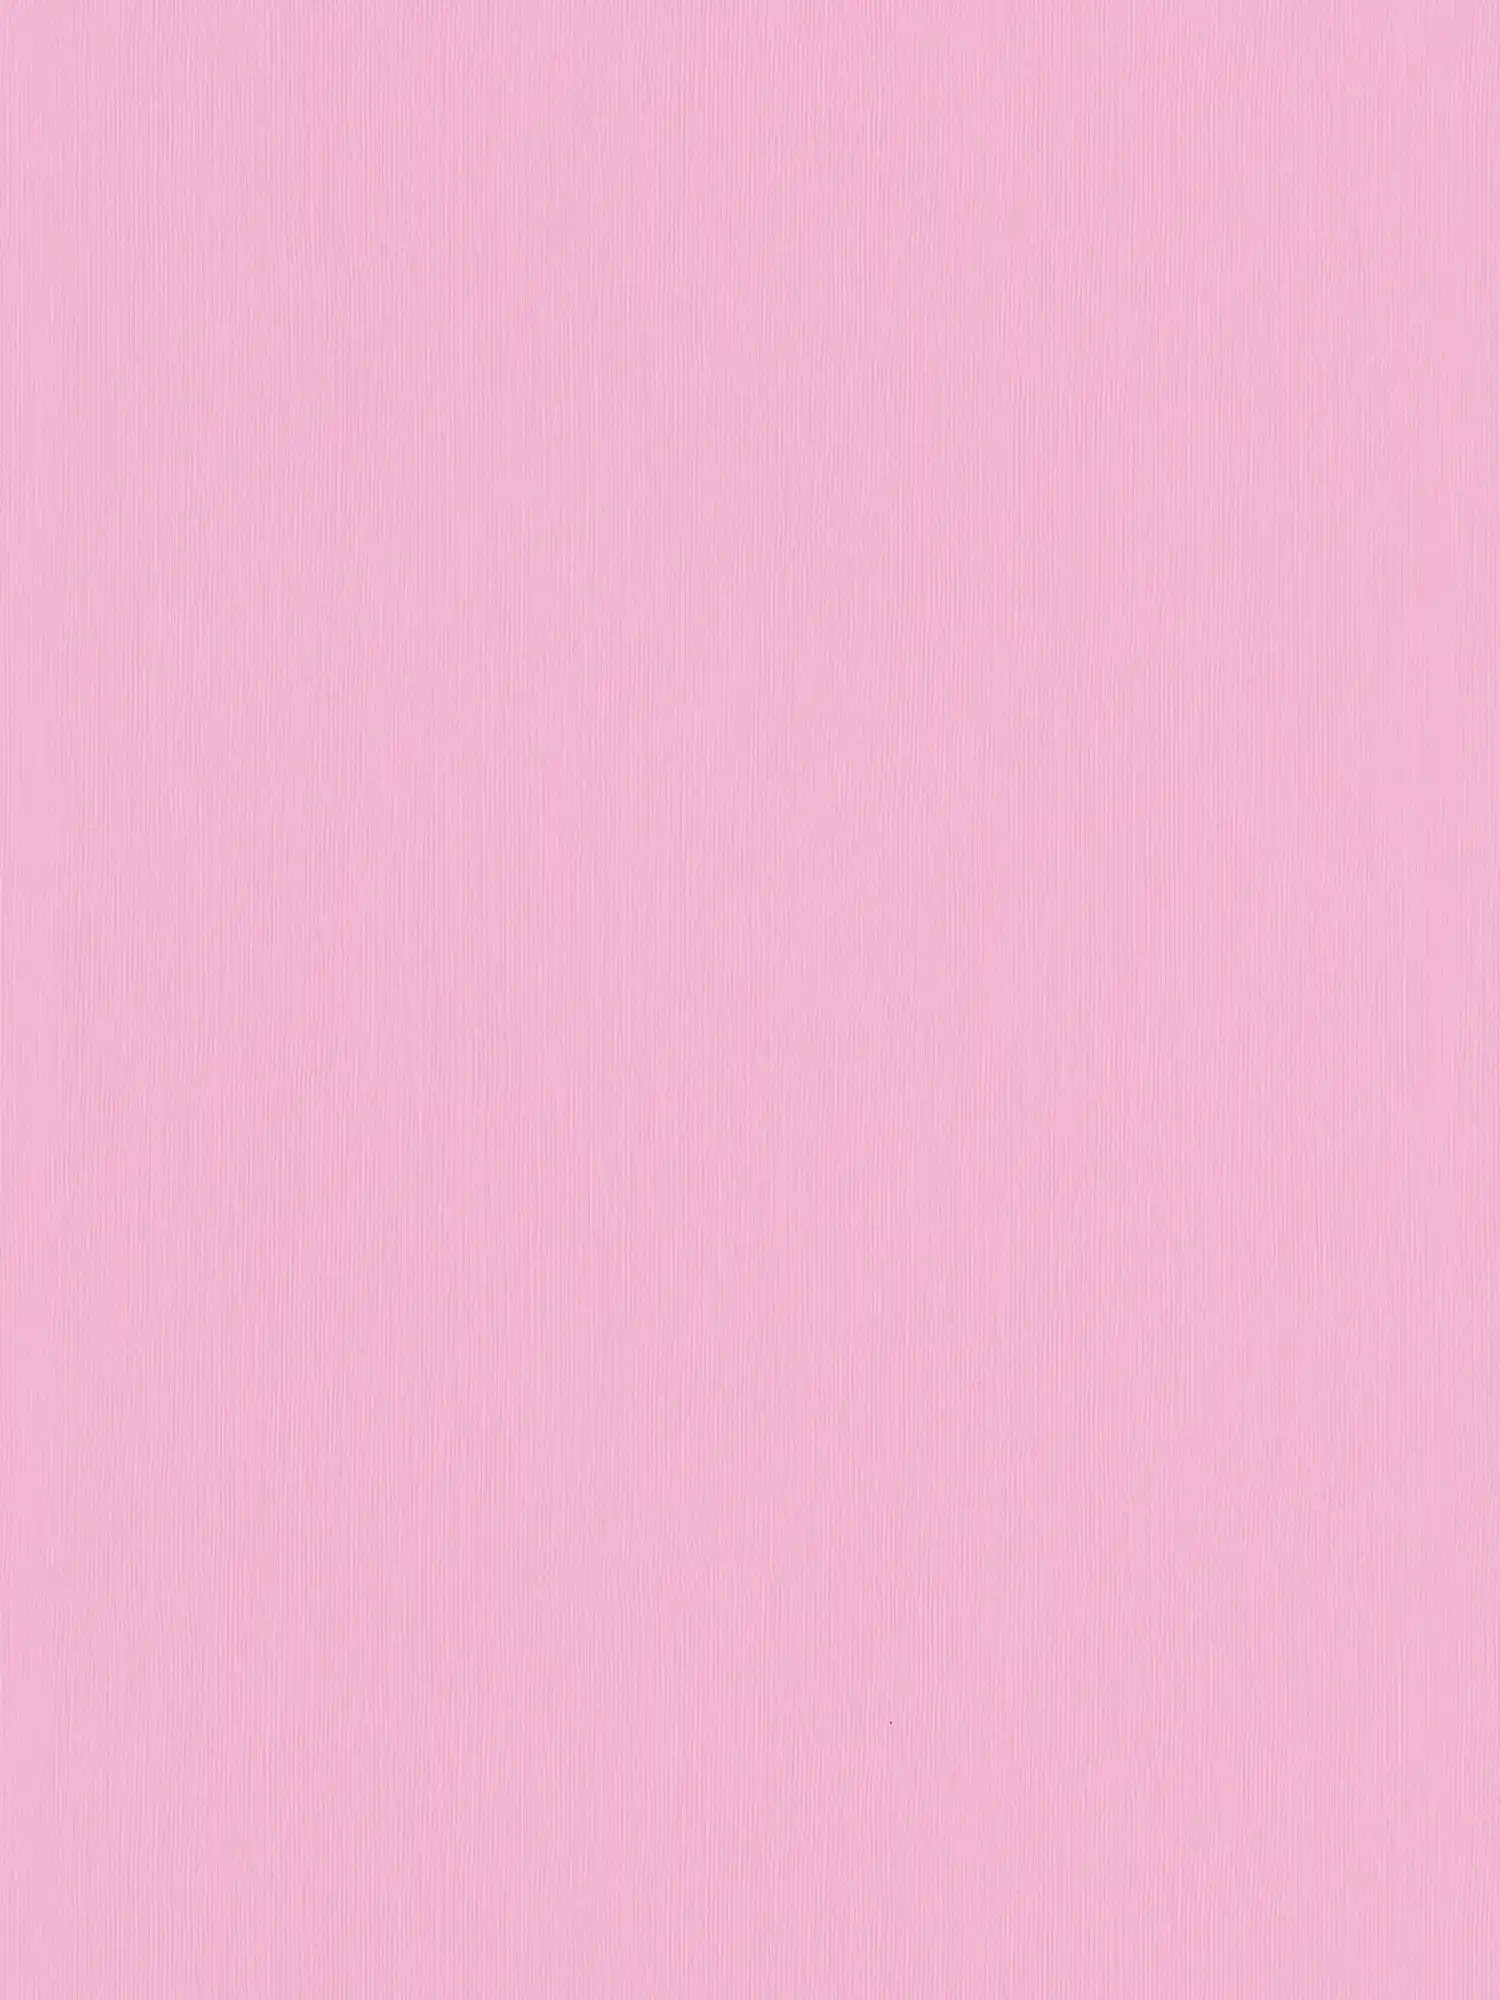 Roze behangpapier effen met reliëfstructuur - Roze
